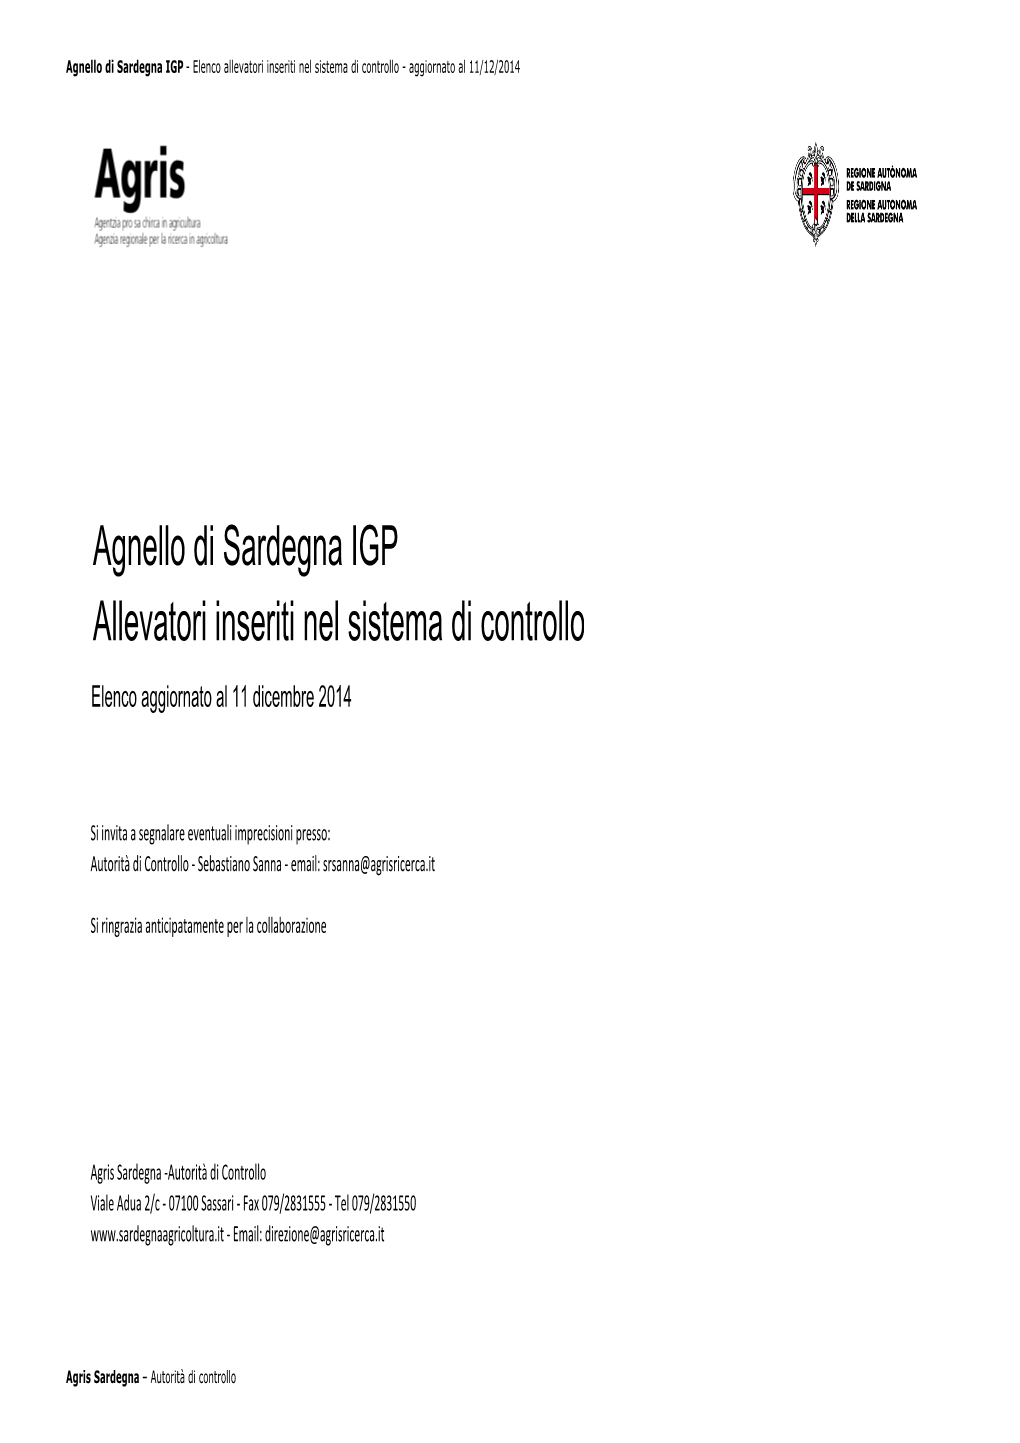 Agnello Di Sardegna IGP Allevatori Inseriti Nel Sistema Di Controllo Elenco Aggiornato Al 11 Dicembre 2014